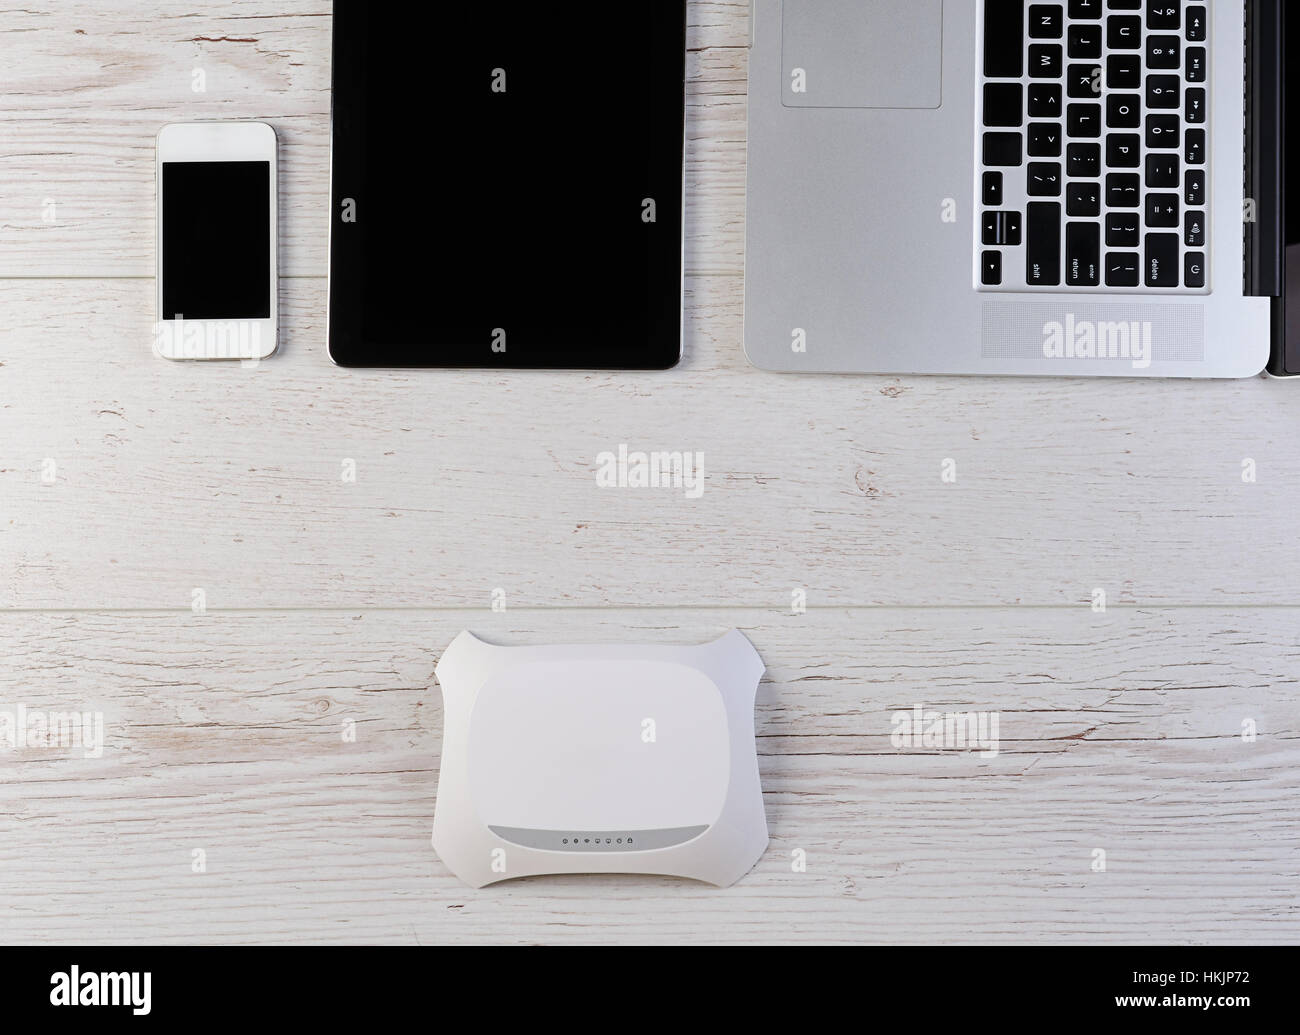 WiFi-Internet-Router-Modem anschließen, Laptop, Tablet und Smartphone auf Holz Stockfoto